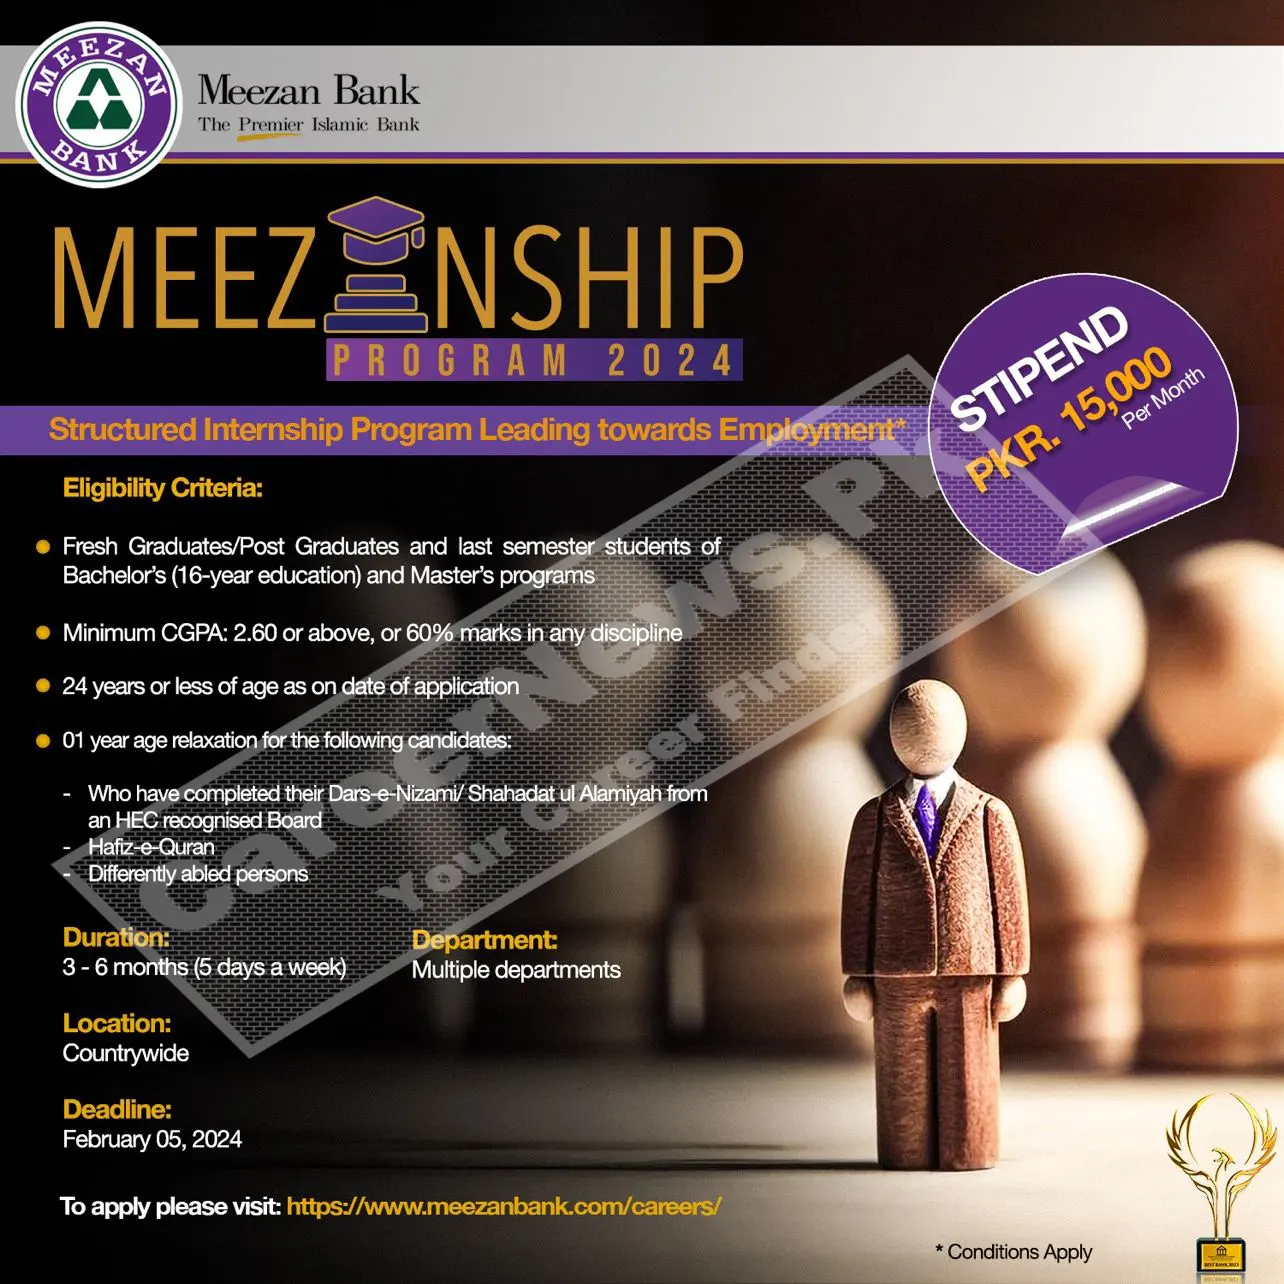 Meezan Bank Internship Program 2024 - Meezanship Program Online Apply